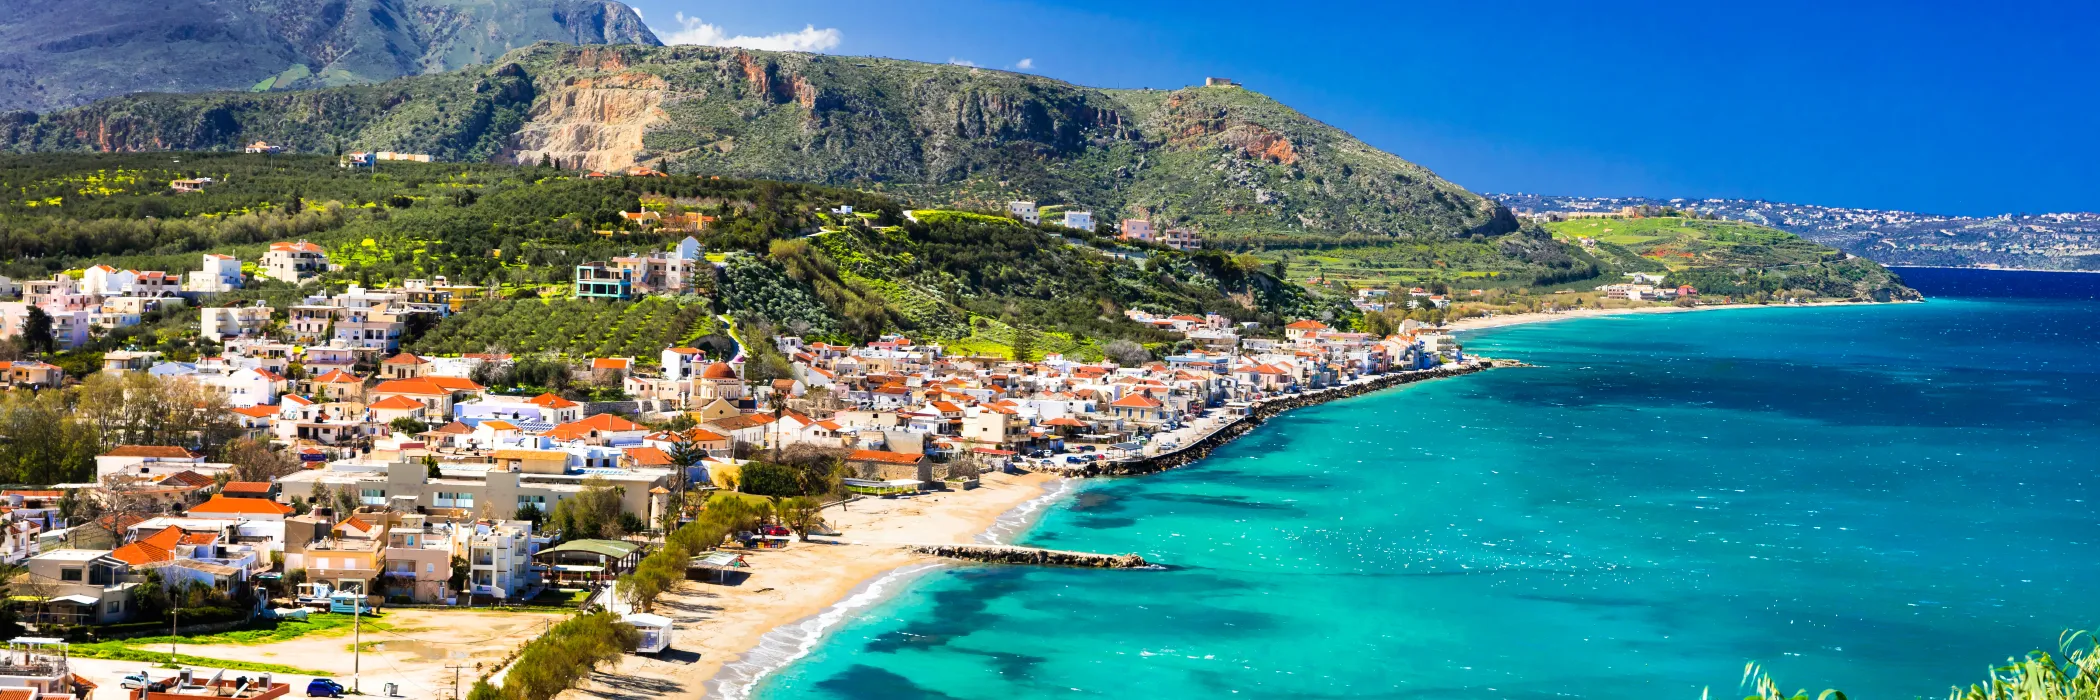 All Inclusive Crete Holidays